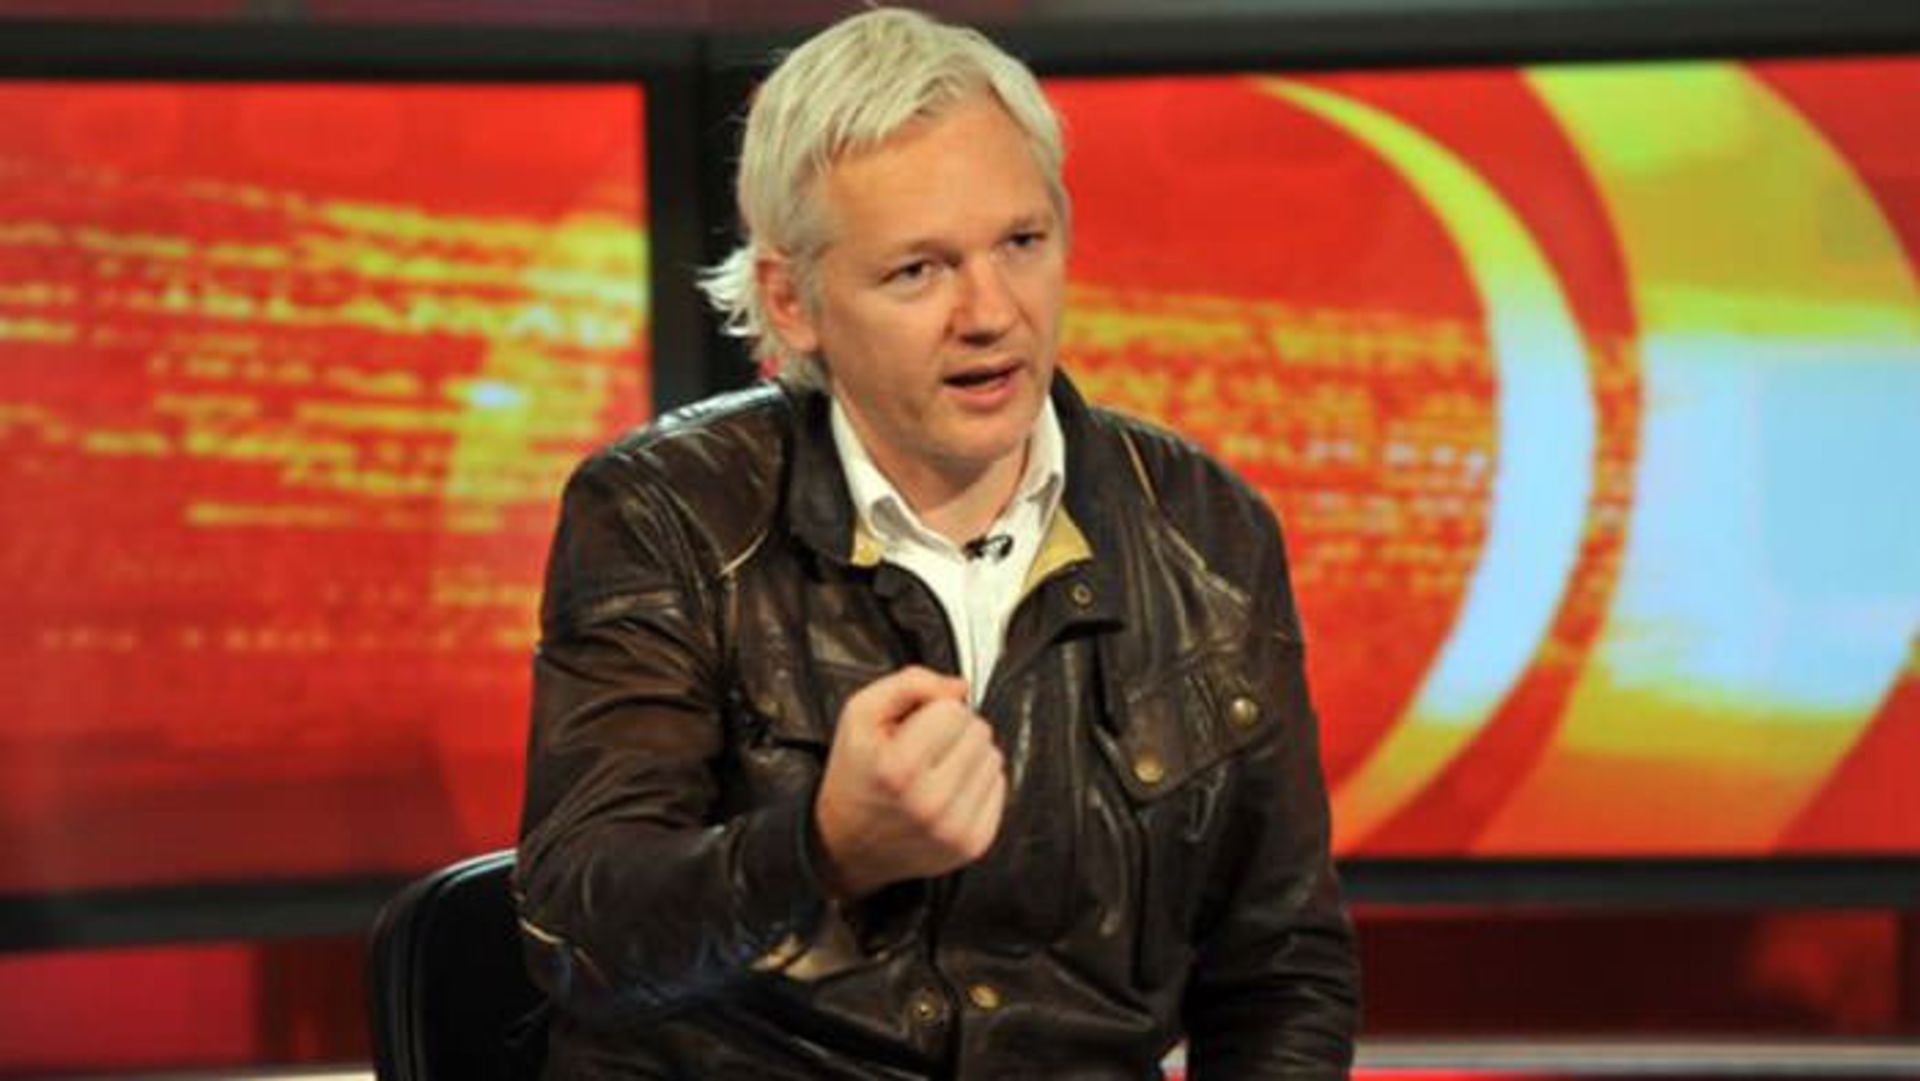 مرجع متخصصين ايران جولين آسانژ / Julian Assange